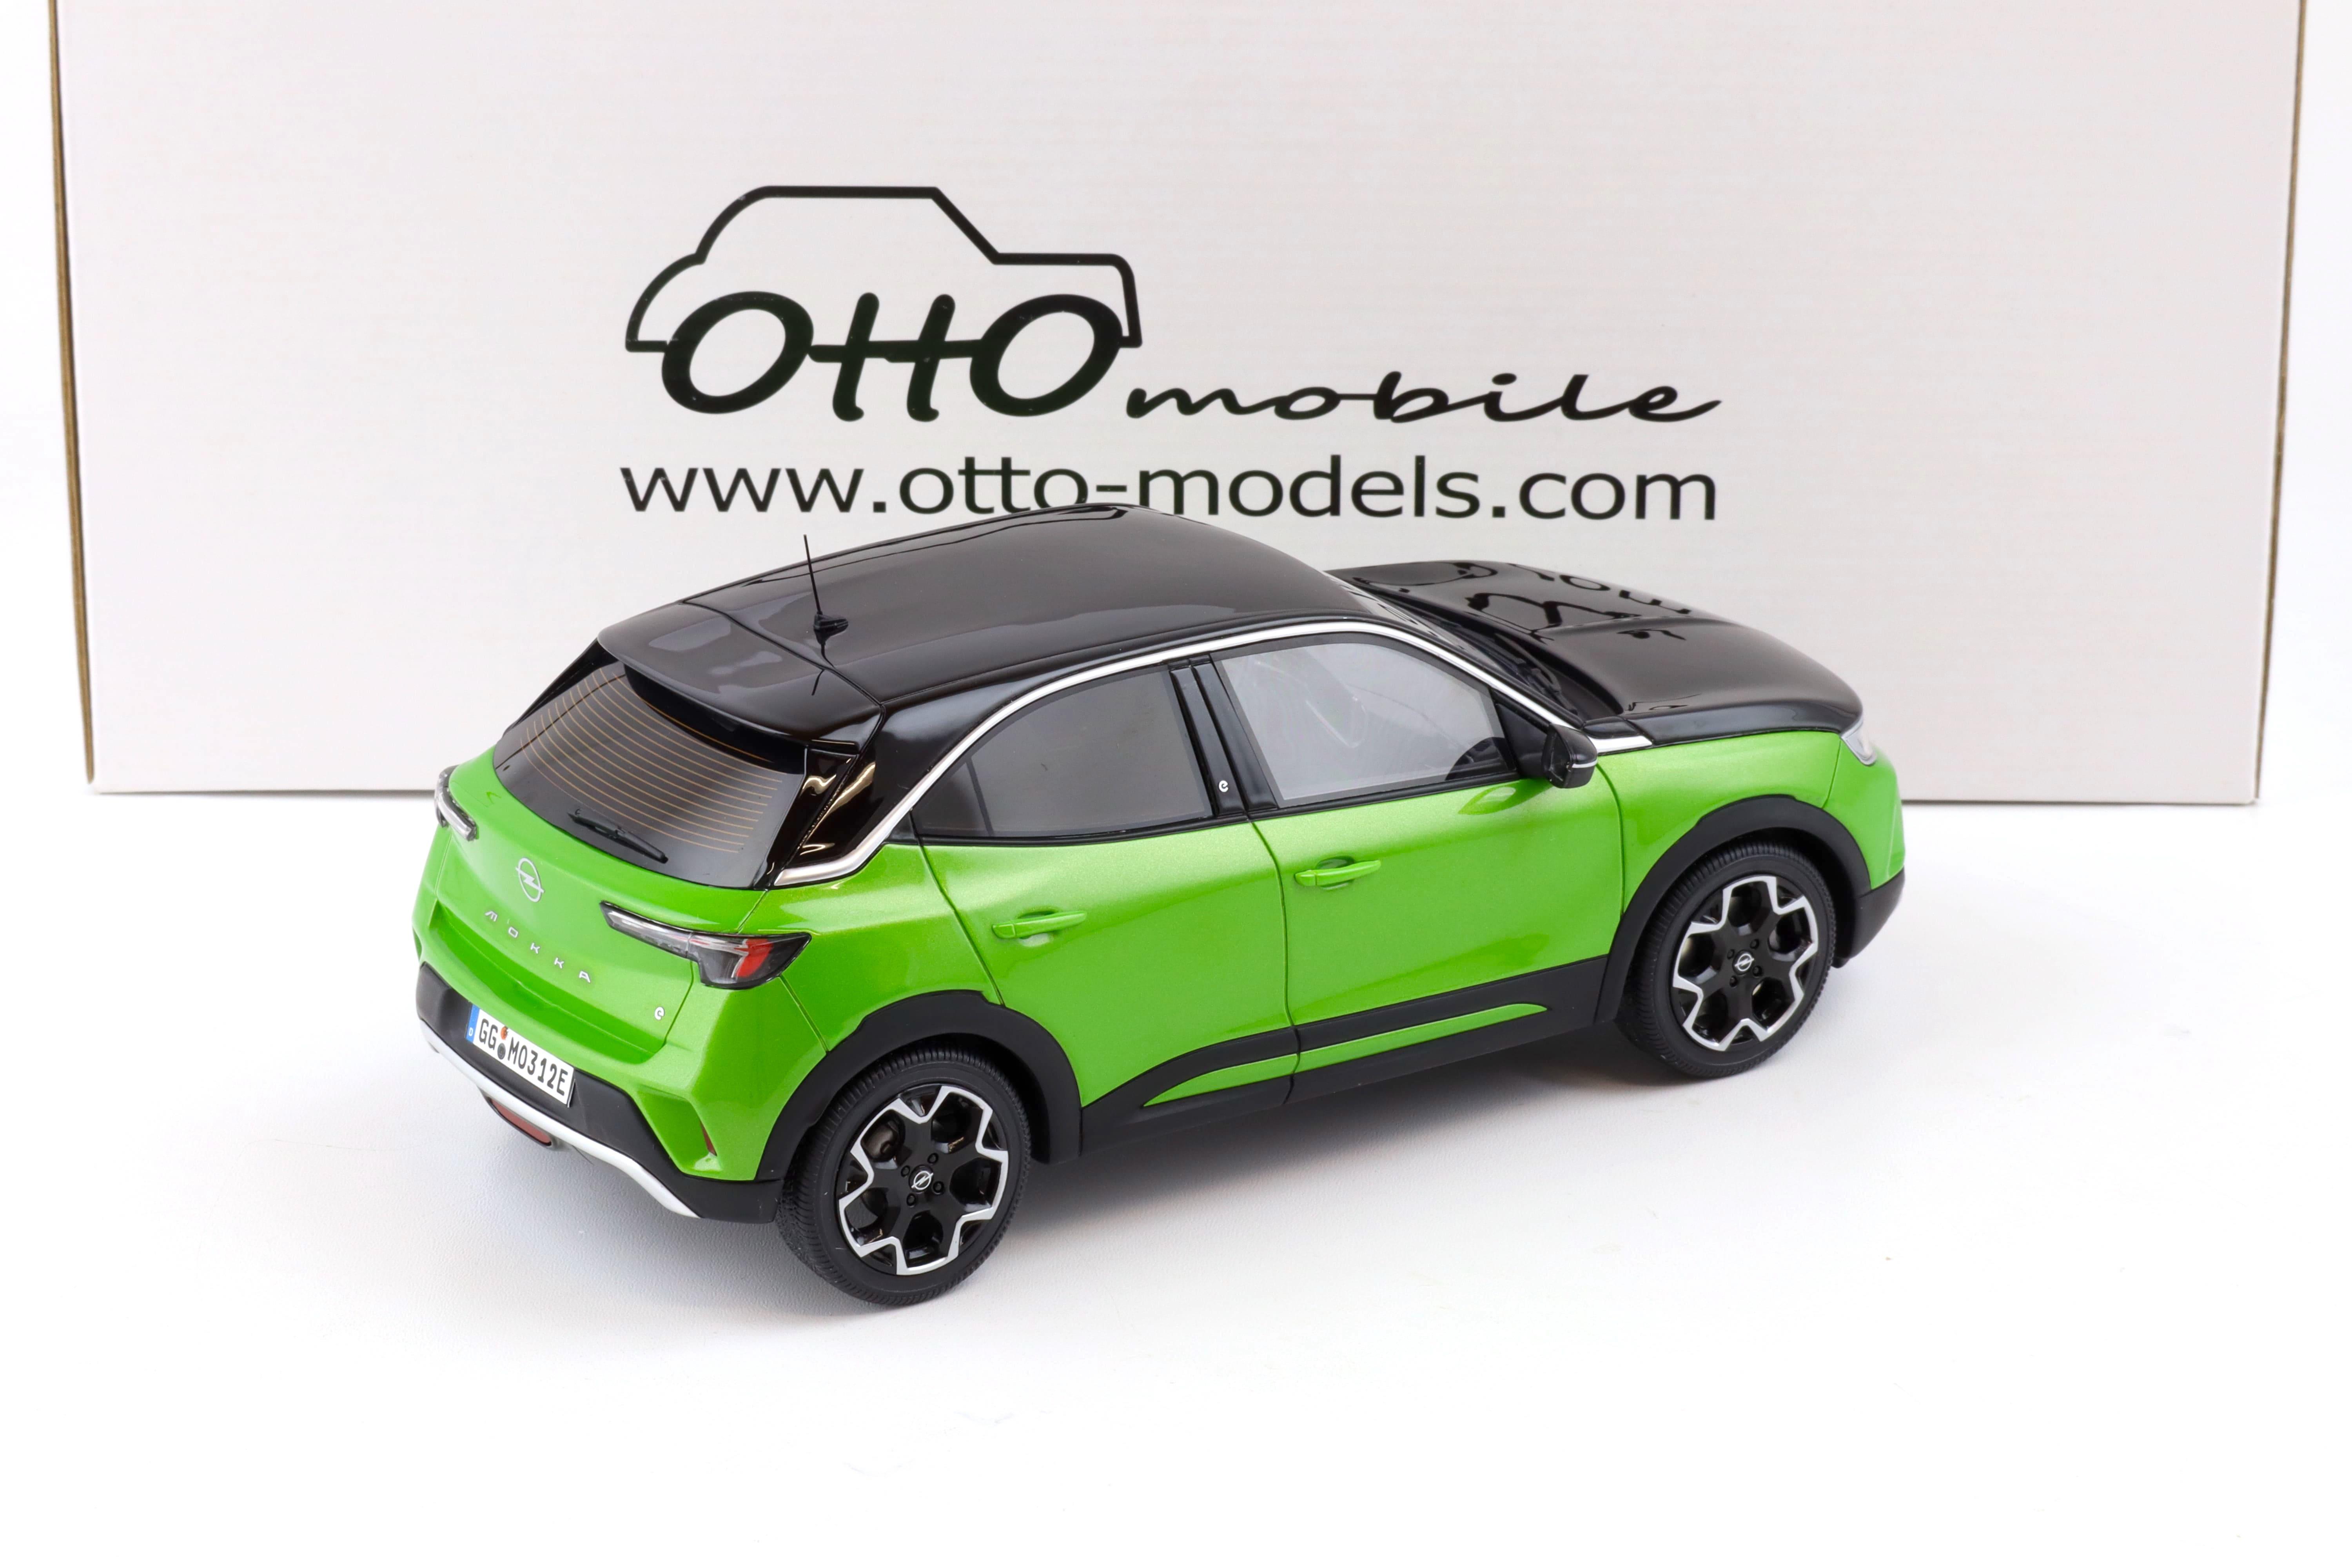 1:18 OTTO mobile OT435 Opel Mokka E GS Line green metallic 2021